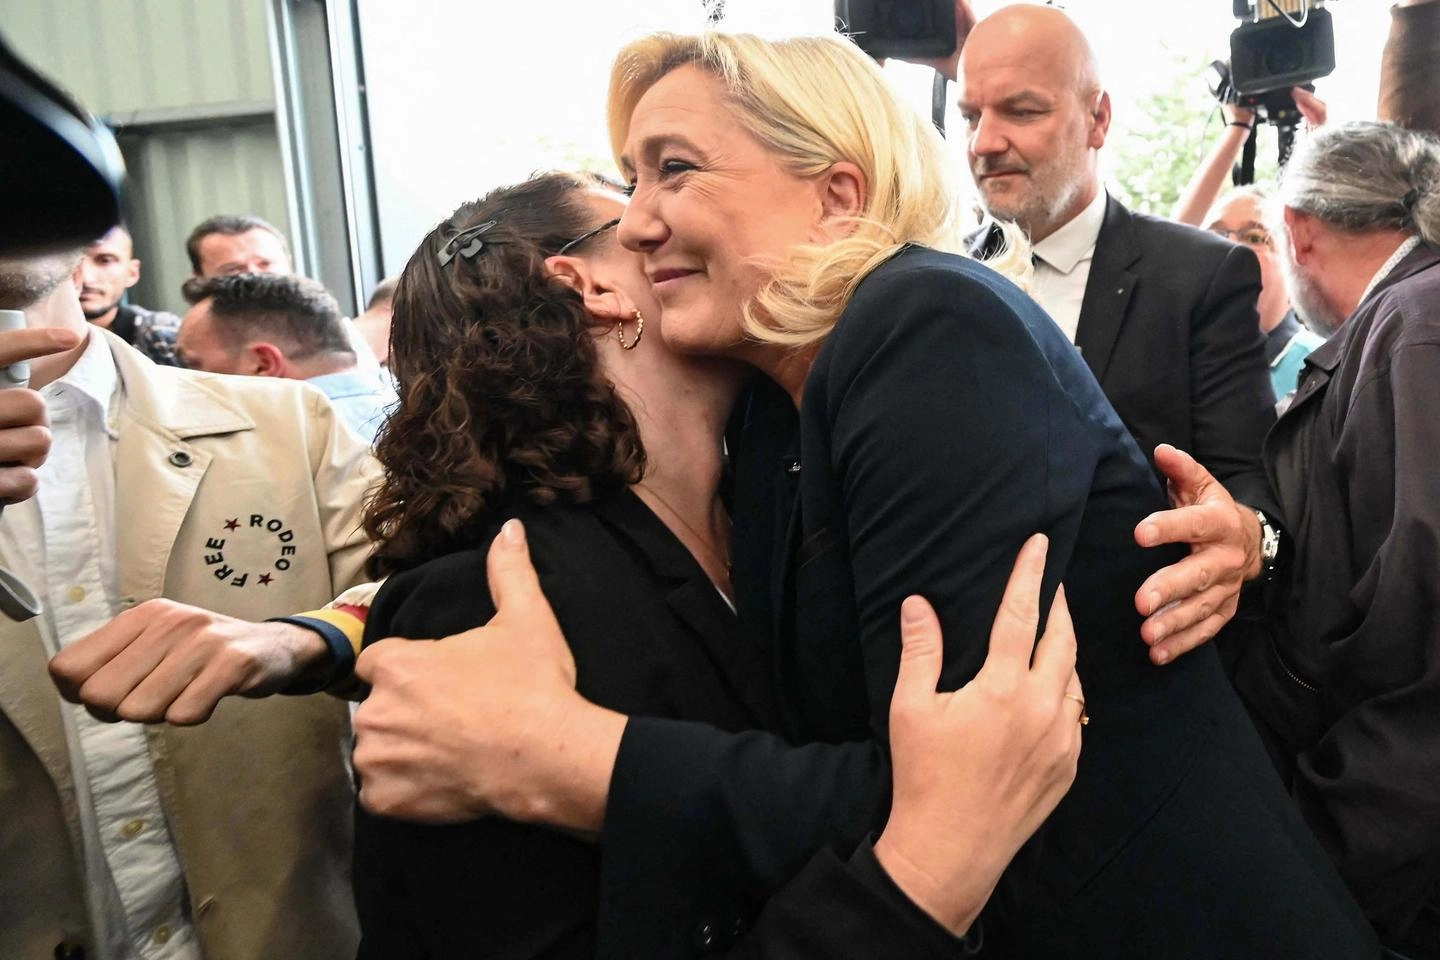 Legislative in Francia, la rivincita di Marine Le Pen